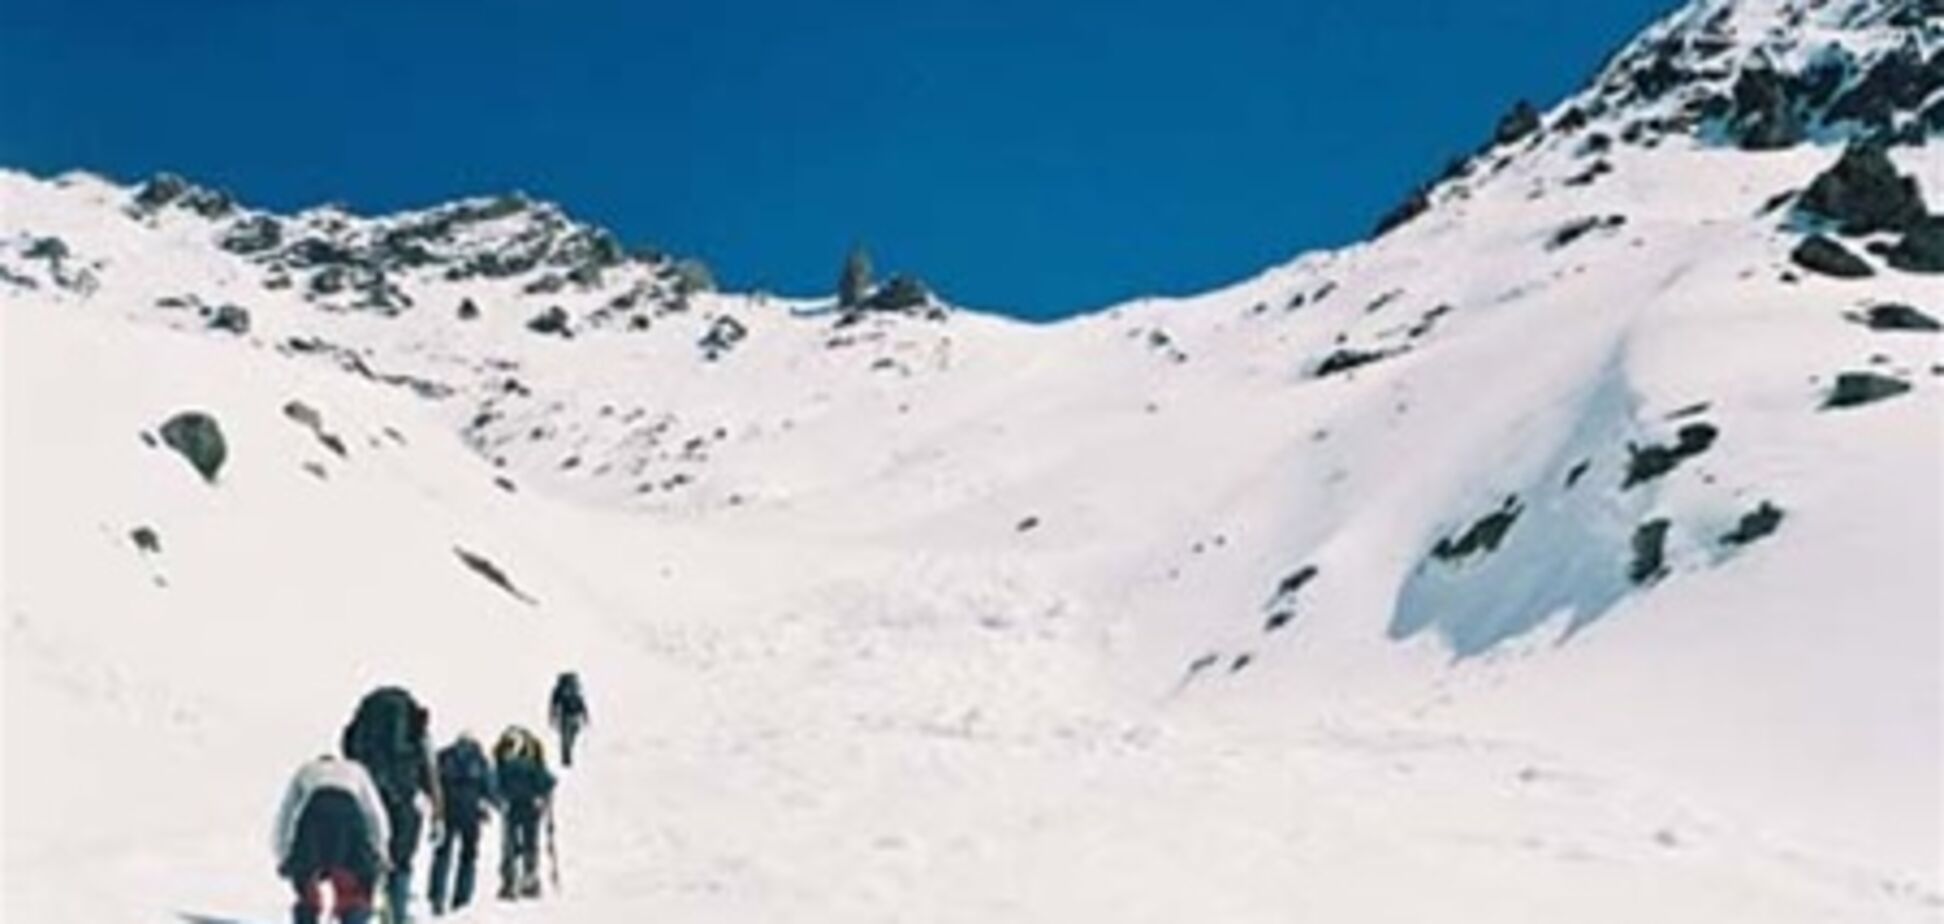 Поиски альпинистов на Эльбрусе осложняются плохой погодой